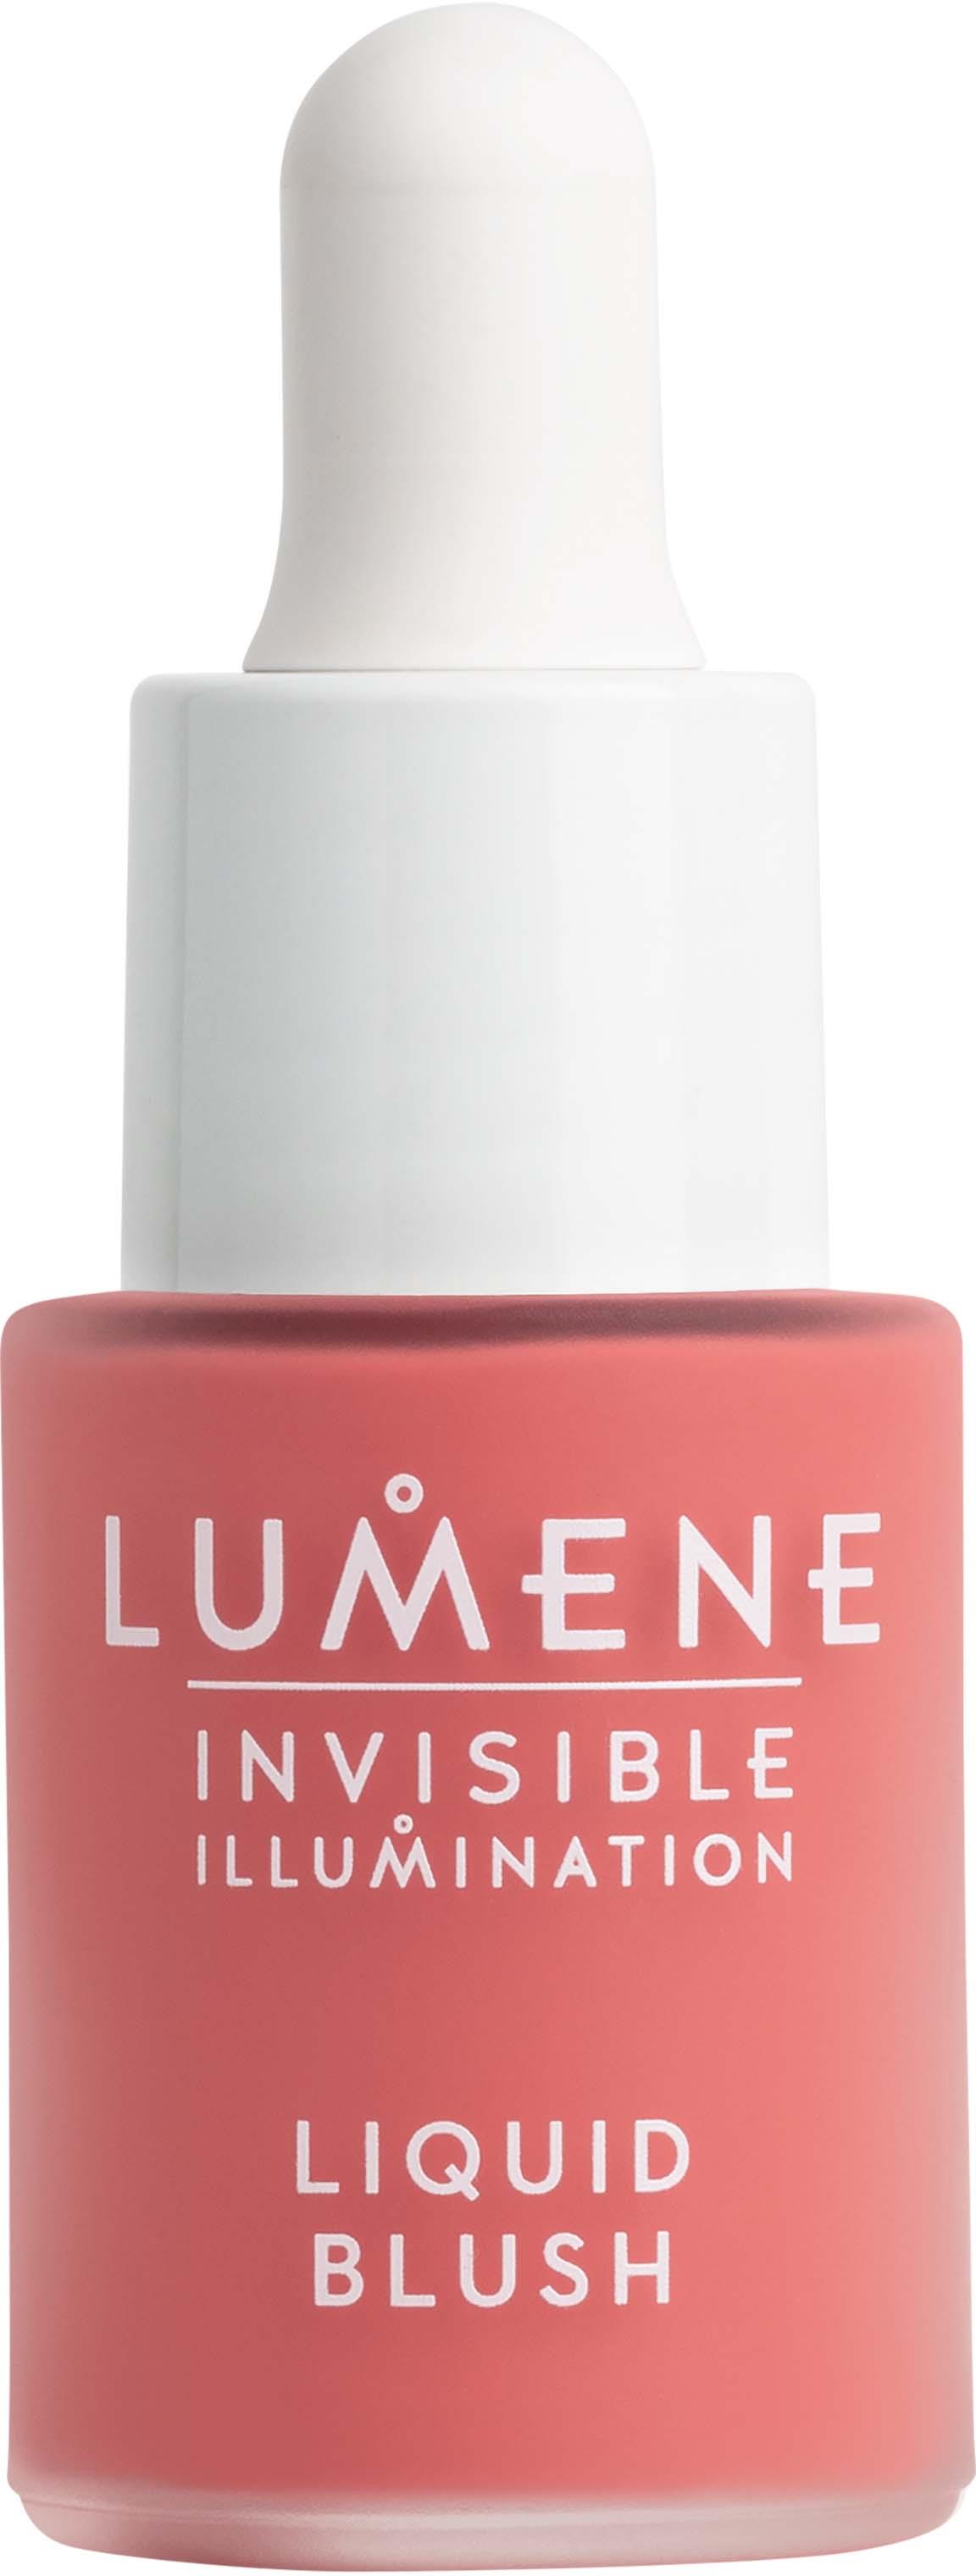 disharmoni utilgivelig beskyttelse Lumene Invisible Illumination Liquid Blush Bright Bloom | lyko.com